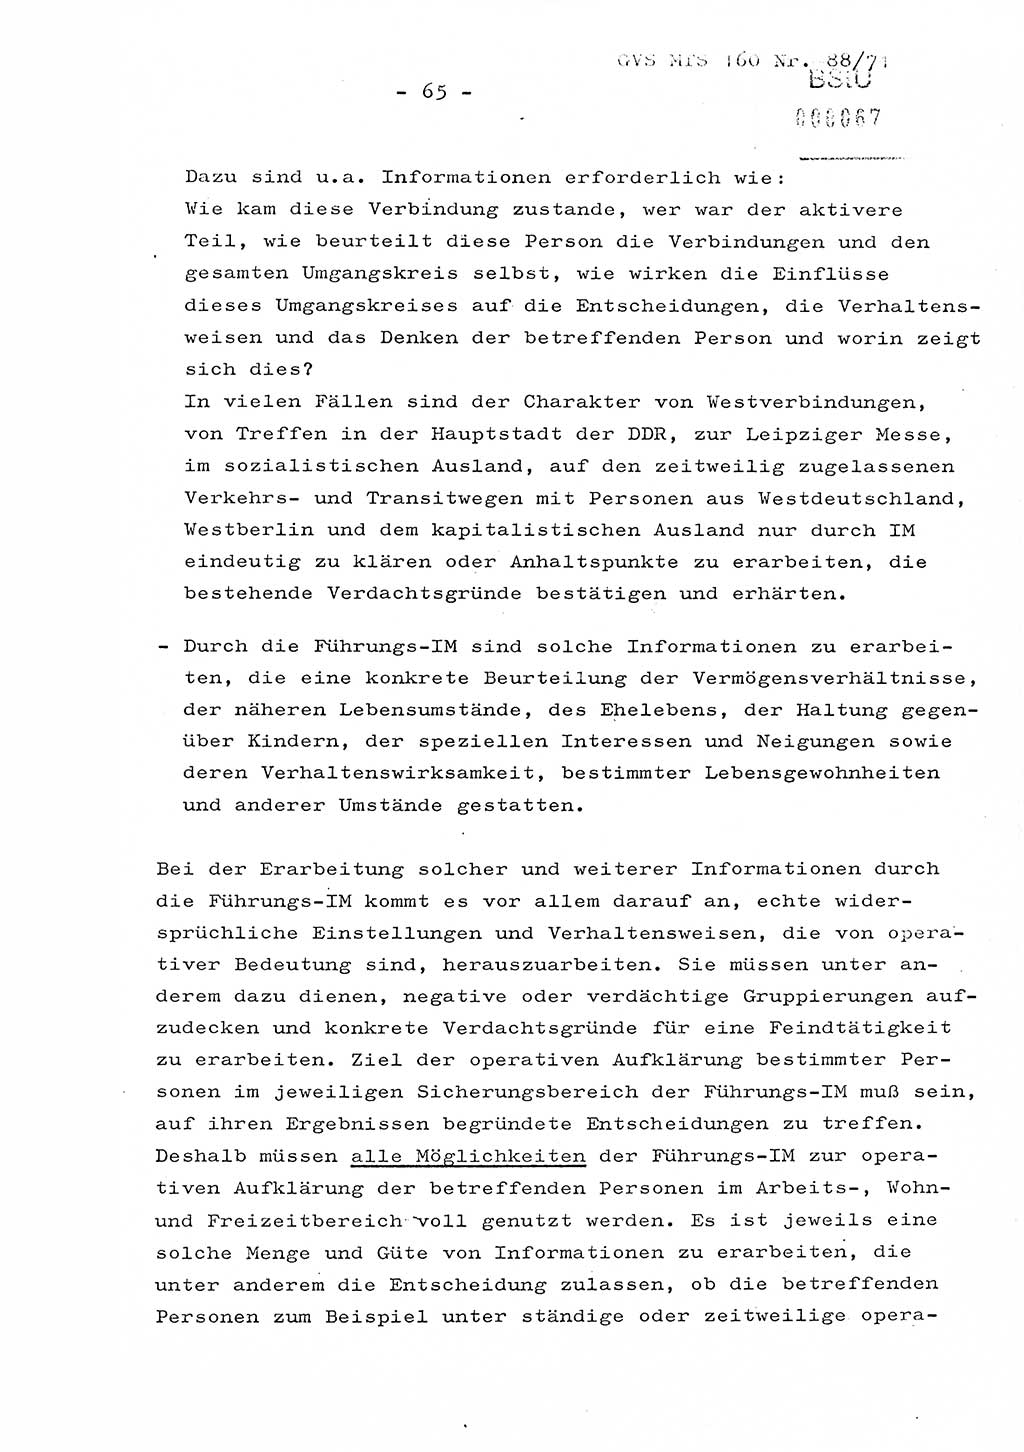 Dissertation Oberstleutnant Josef Schwarz (BV Schwerin), Major Fritz Amm (JHS), Hauptmann Peter Gräßler (JHS), Ministerium für Staatssicherheit (MfS) [Deutsche Demokratische Republik (DDR)], Juristische Hochschule (JHS), Geheime Verschlußsache (GVS) 160-88/71, Potsdam 1972, Seite 65 (Diss. MfS DDR JHS GVS 160-88/71 1972, S. 65)